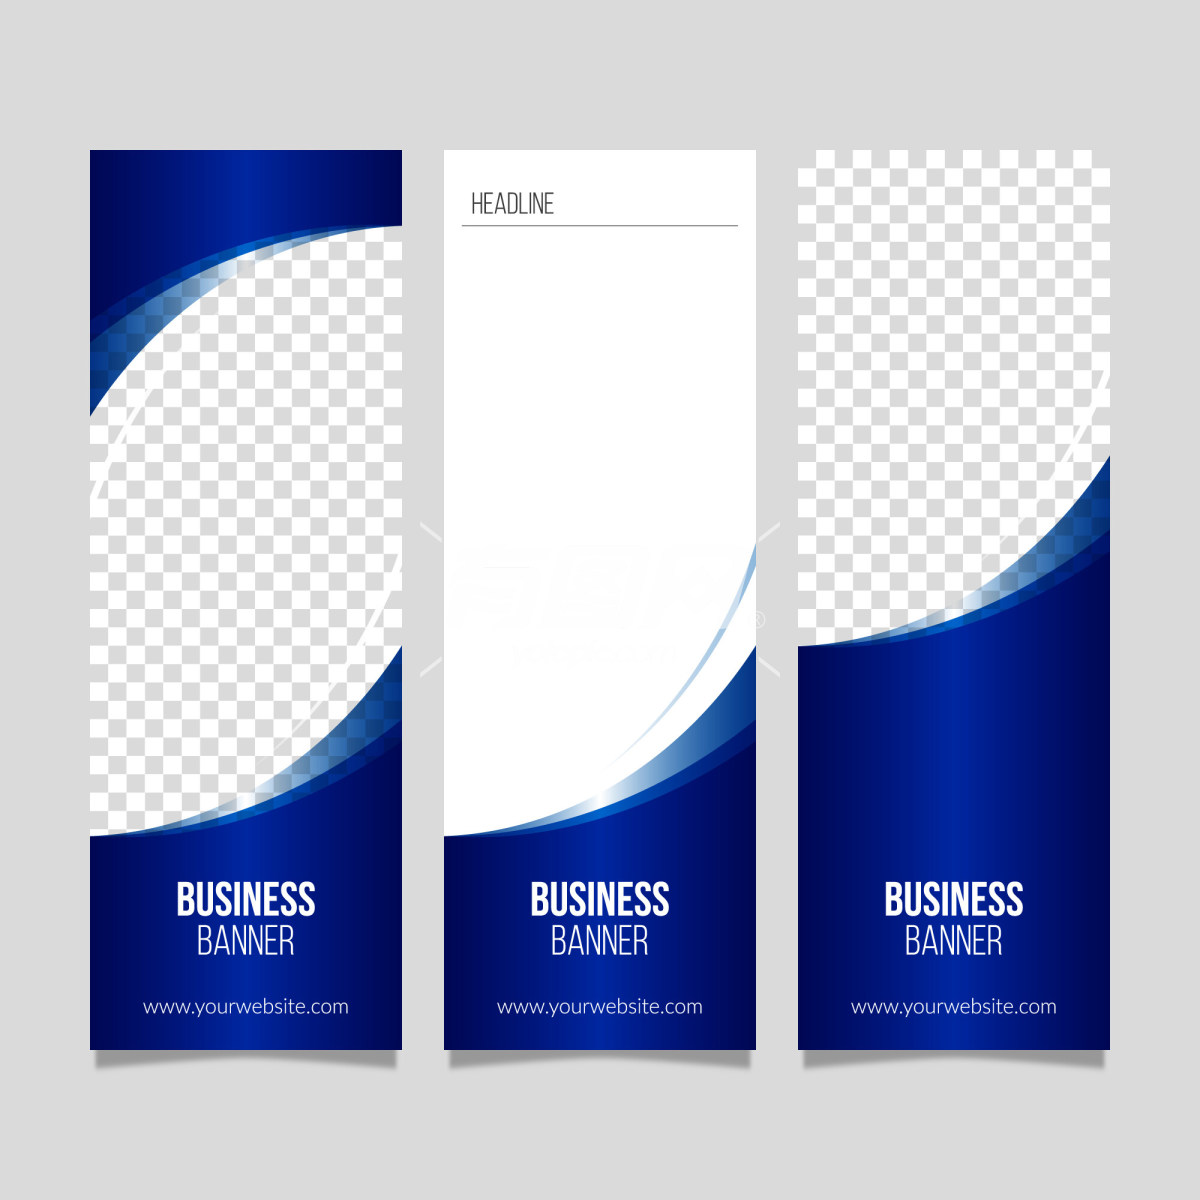 蓝色商业横幅设计模板